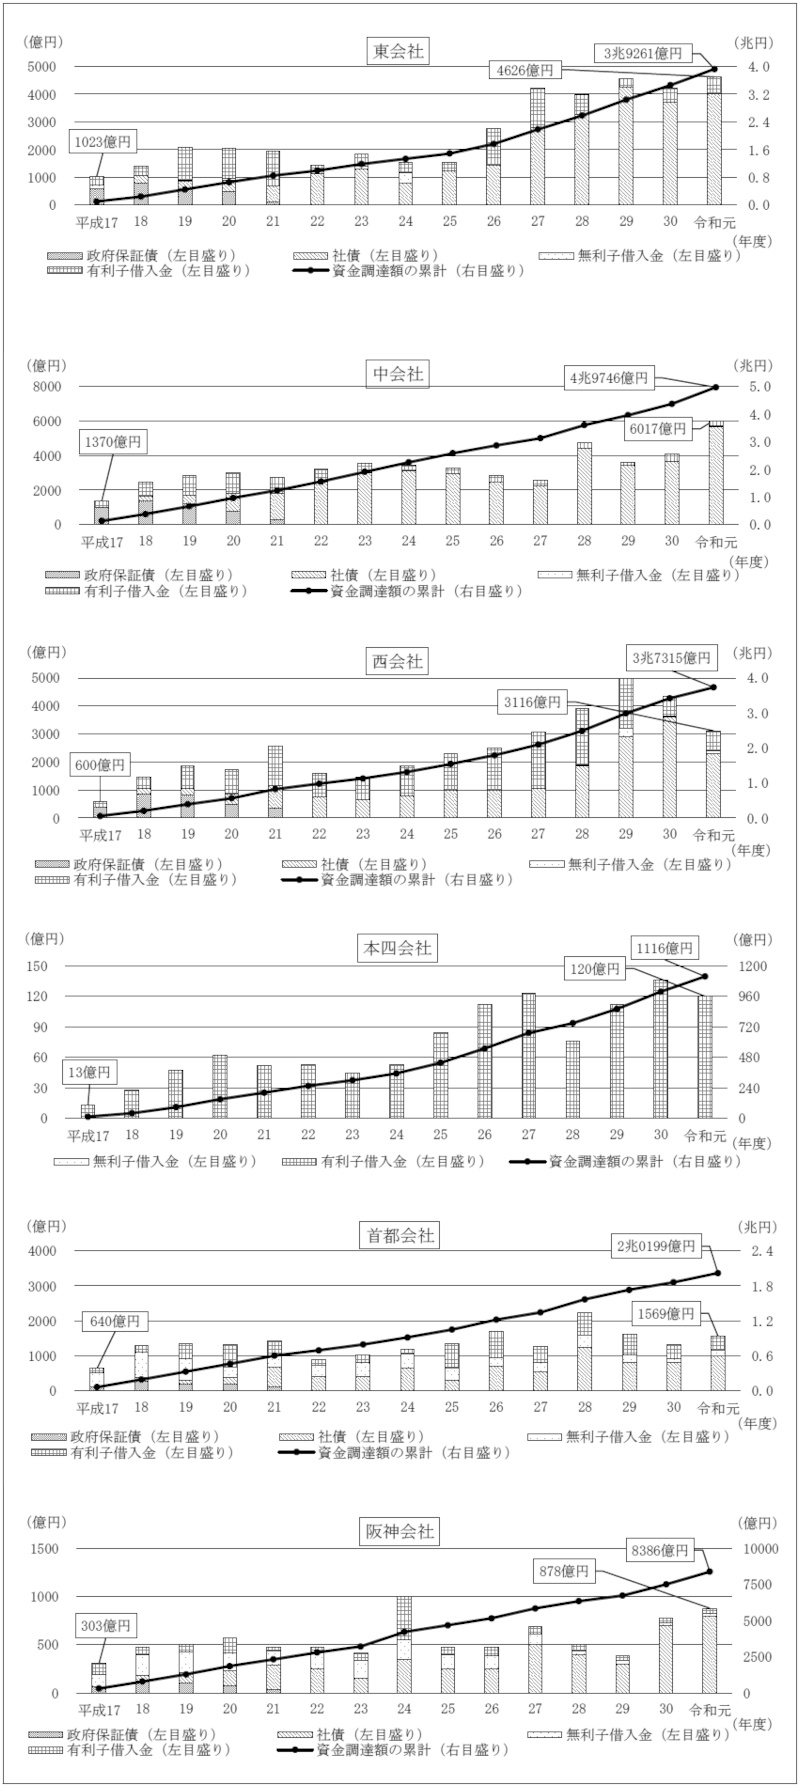 図表2-2-15 6会社における資金調達額の推移（平成17年度～令和元年度）画像